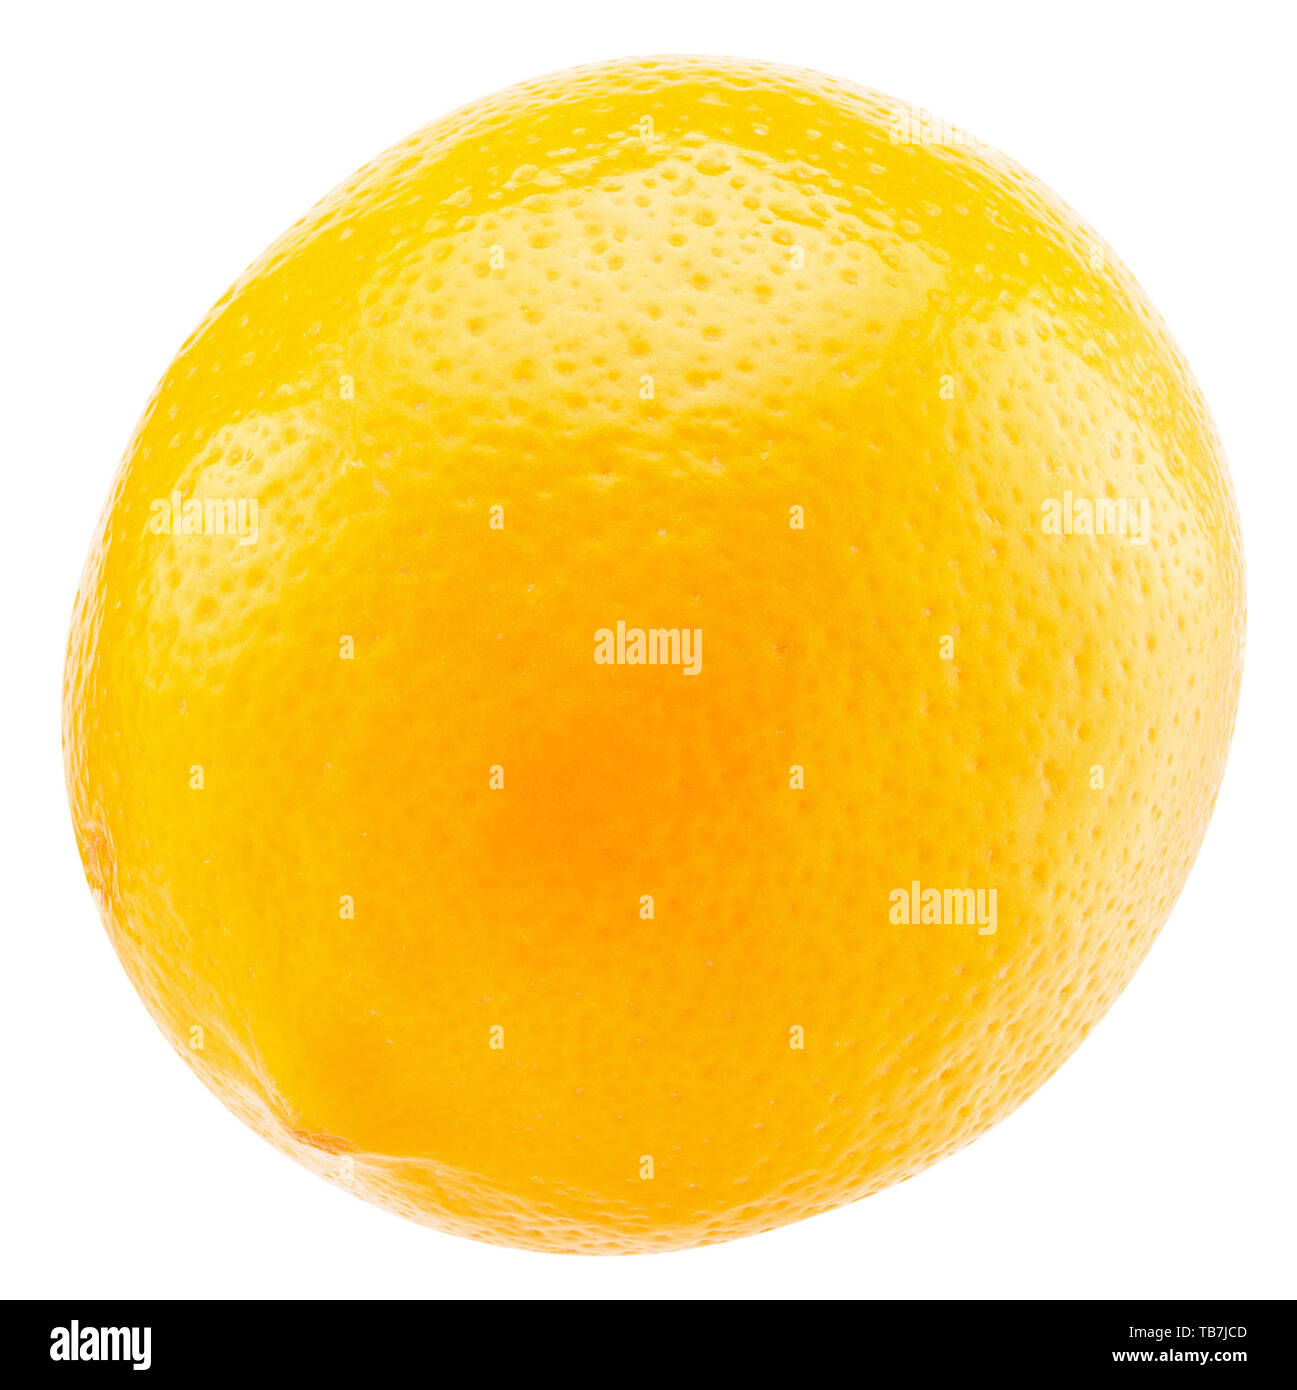 Zitrone isoliert auf einem weißen Hintergrund. Stockfoto